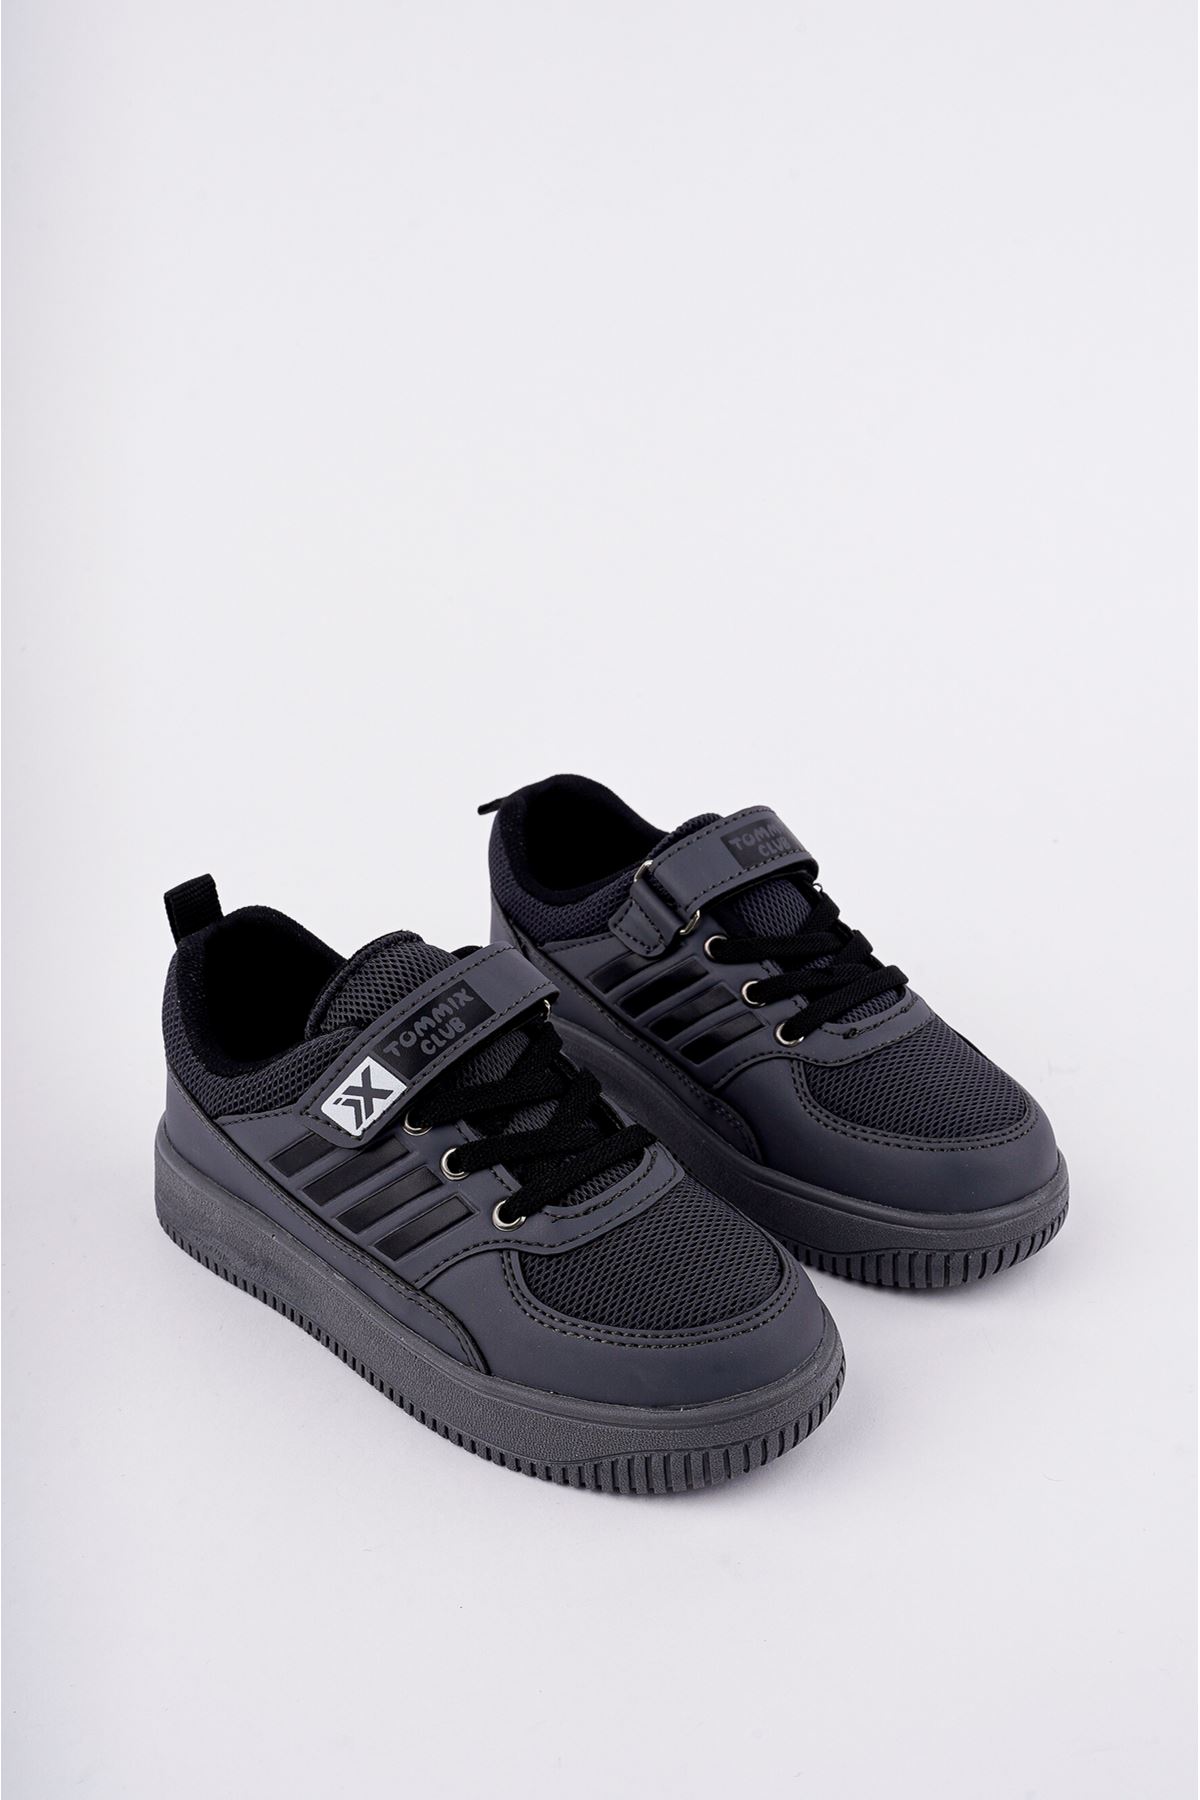 Velcro Black to Black Stripe Kids Sneakers